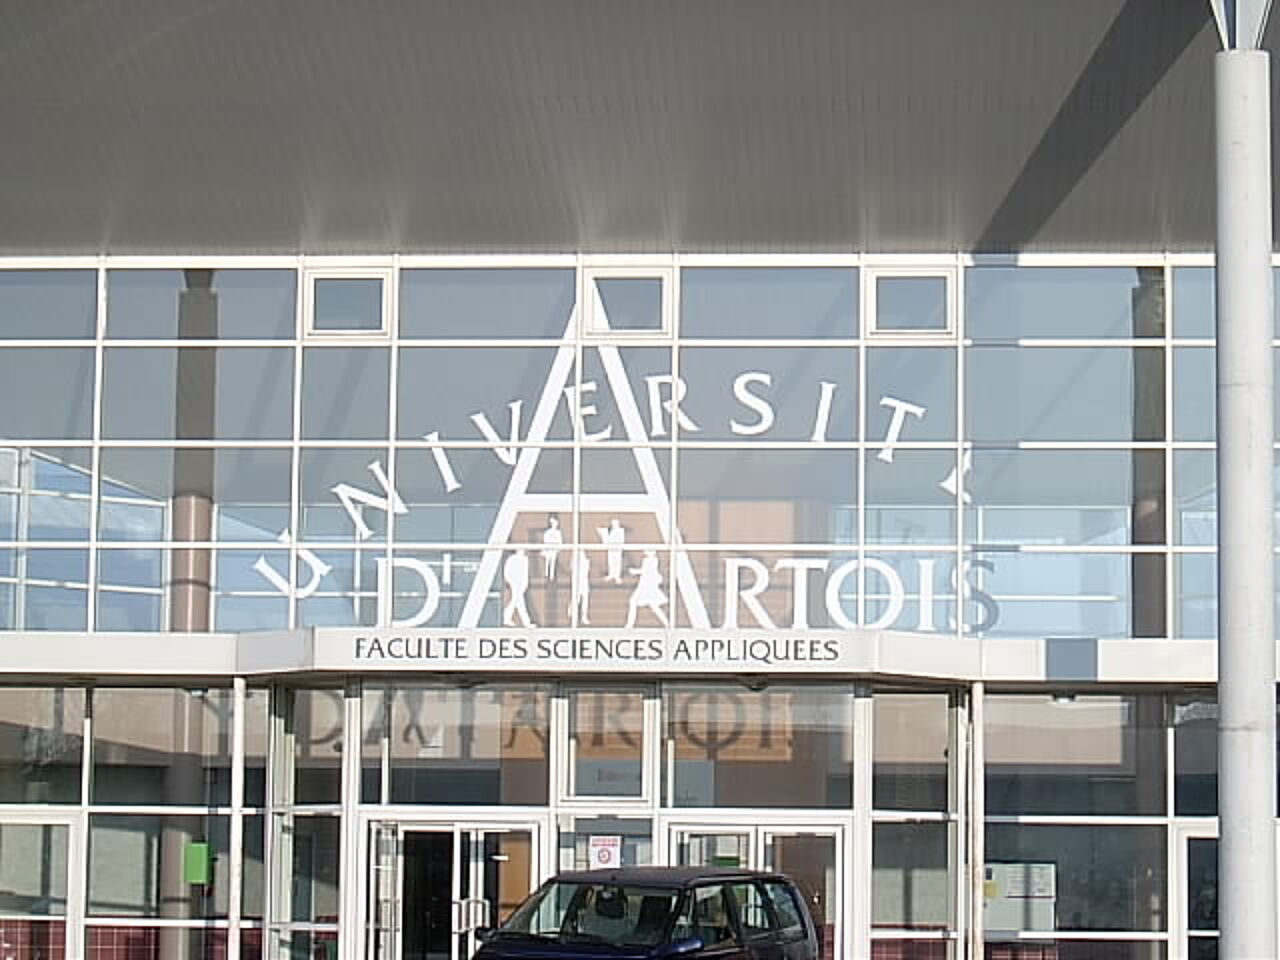 Frontalansicht des verglasten Eingangsbereichs der Université d'Artois in Béthune/Frankreich.